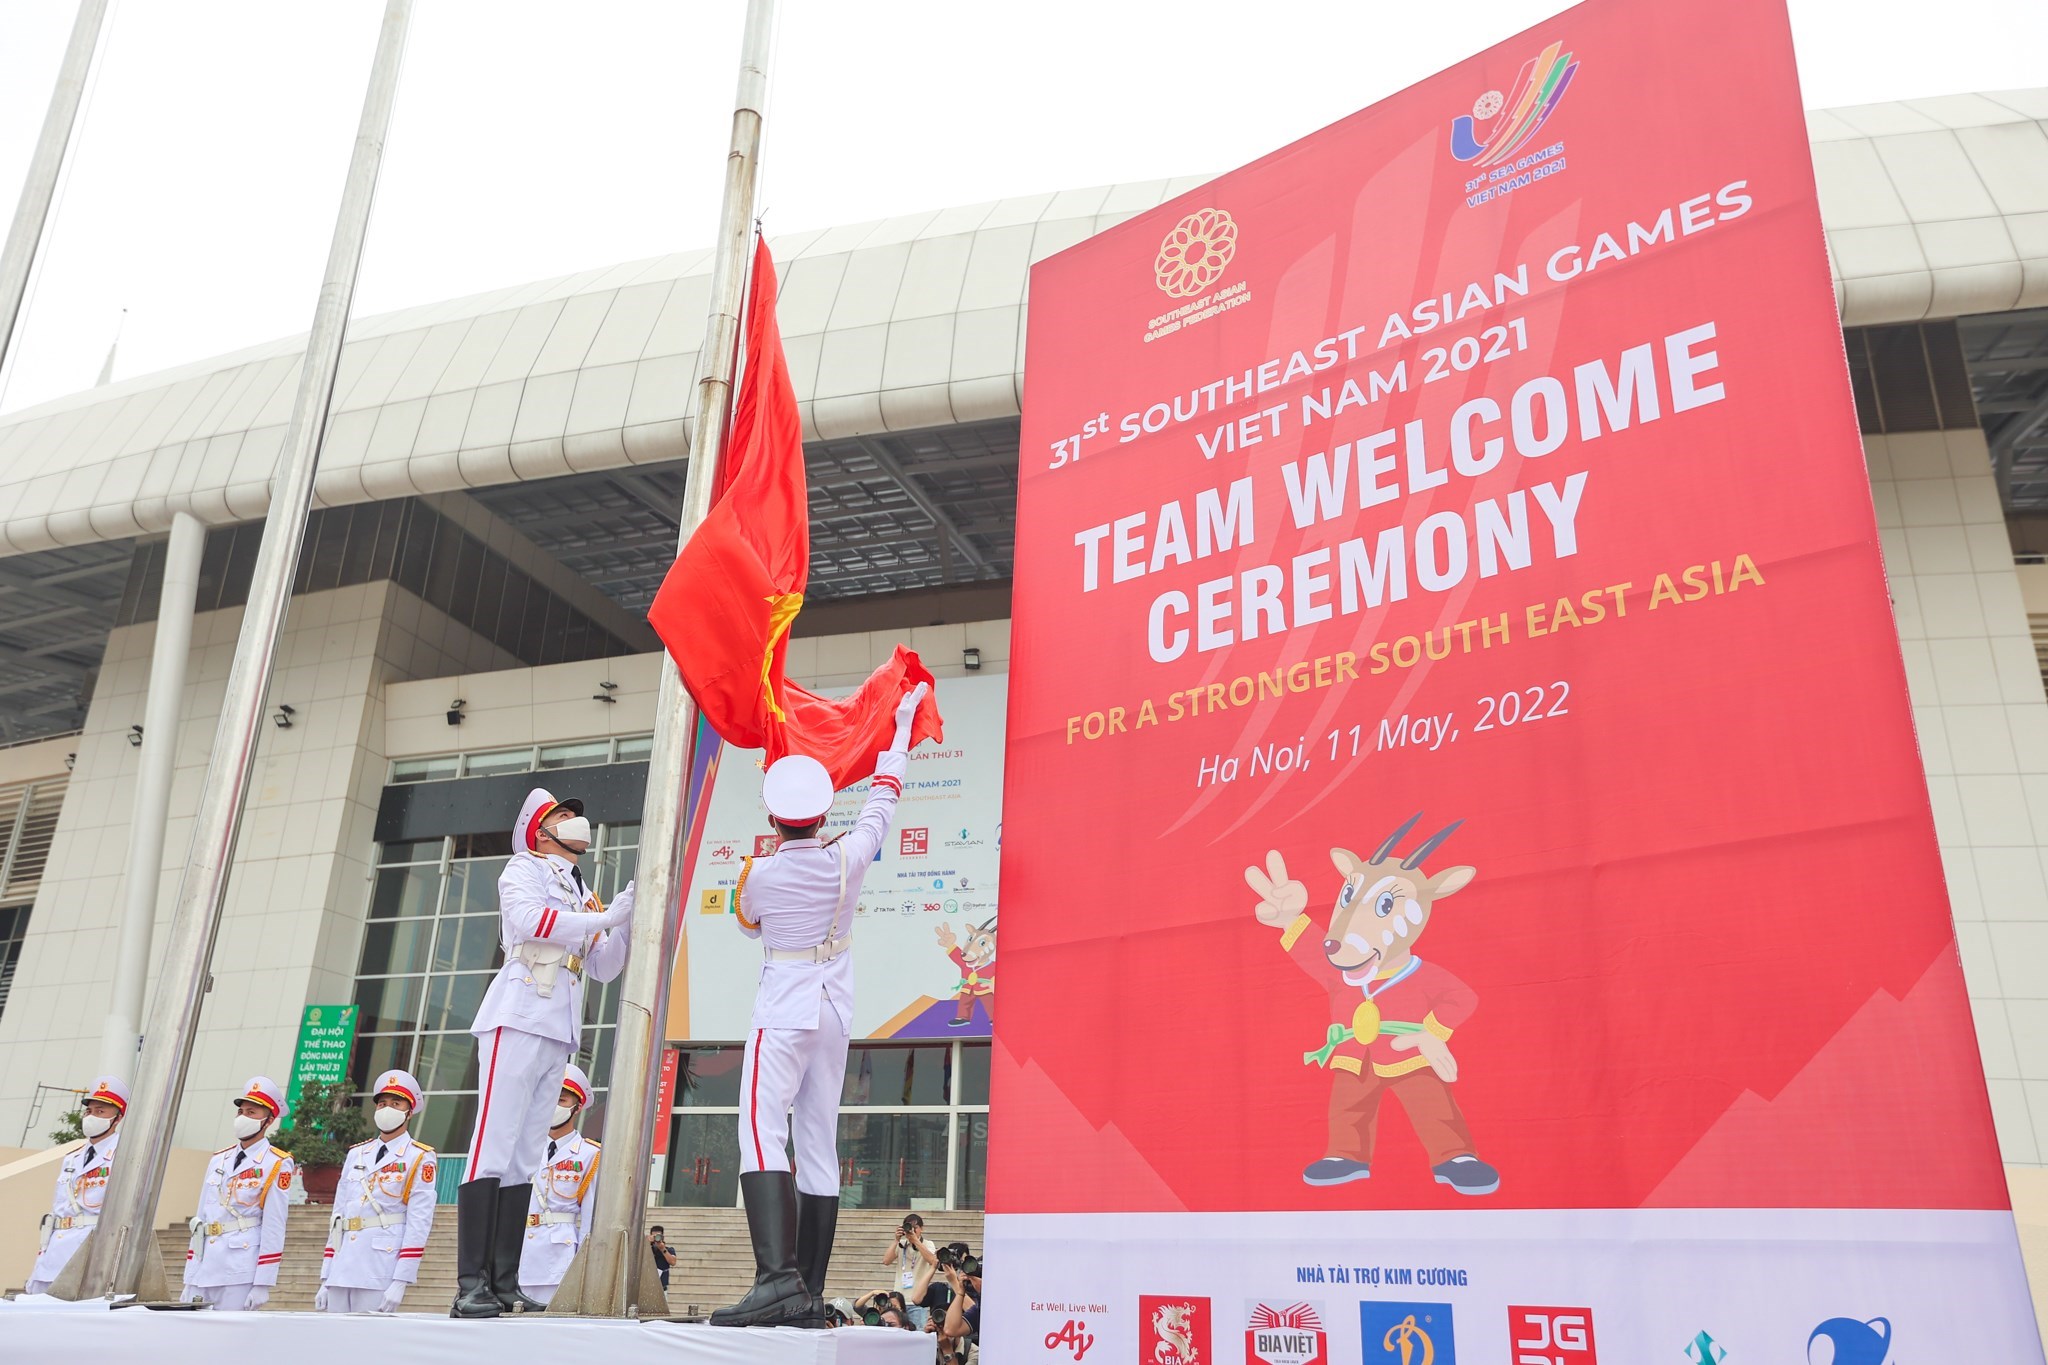 Hãy chiêm ngưỡng những hình ảnh đầy tự hào của lá cờ Việt Nam - biểu tượng của đất nước ta với nhiều ý nghĩa về lịch sử và văn hóa đang chờ đón bạn khám phá.